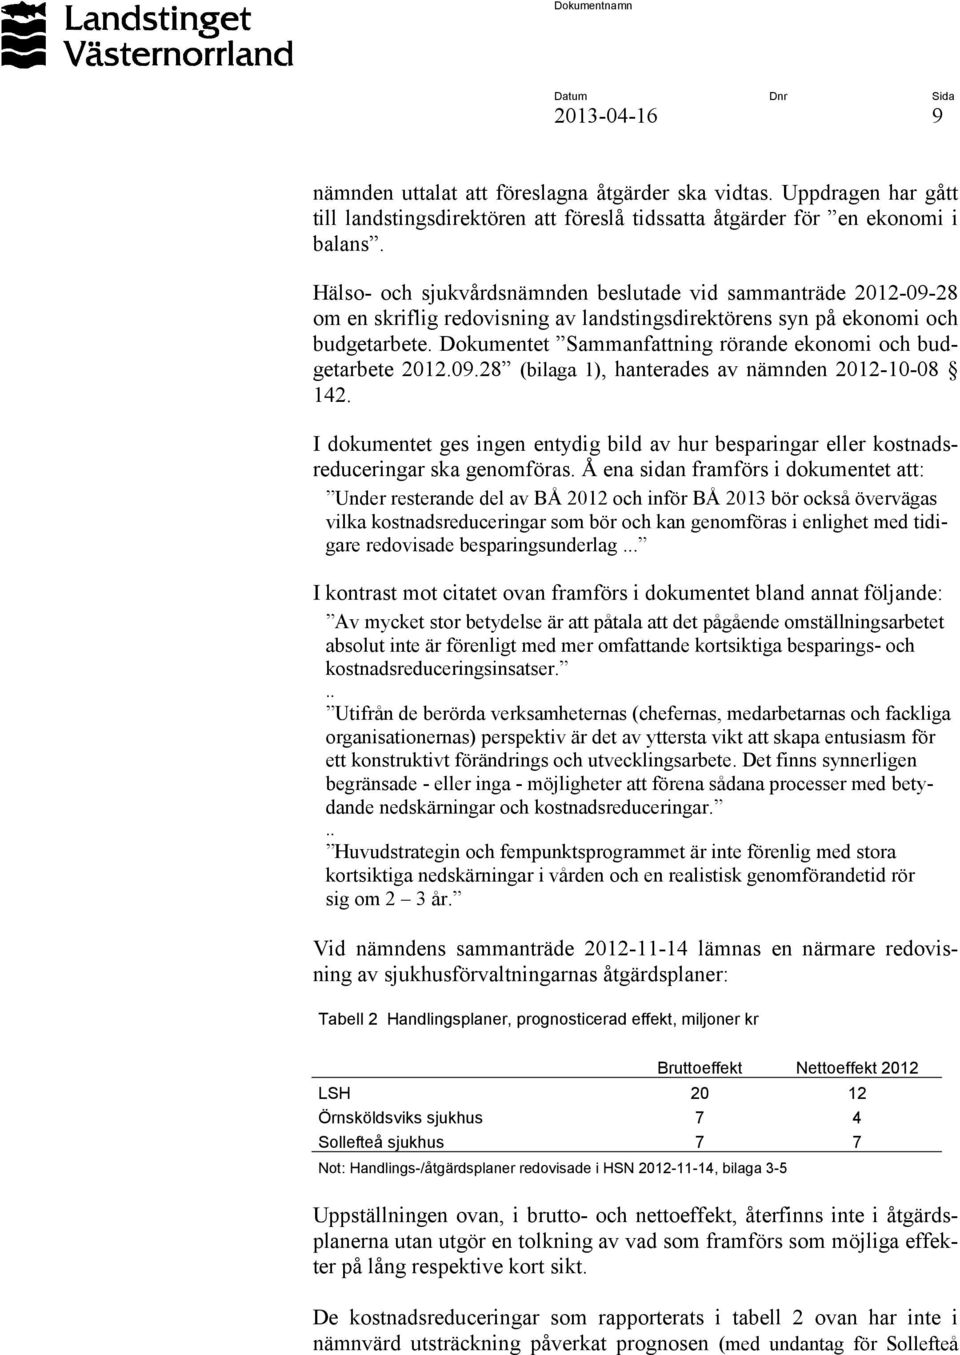 Dokumentet Sammanfattning rörande ekonomi och budgetarbete 2012.09.28 (bilaga 1), hanterades av nämnden 2012-10-08 142.